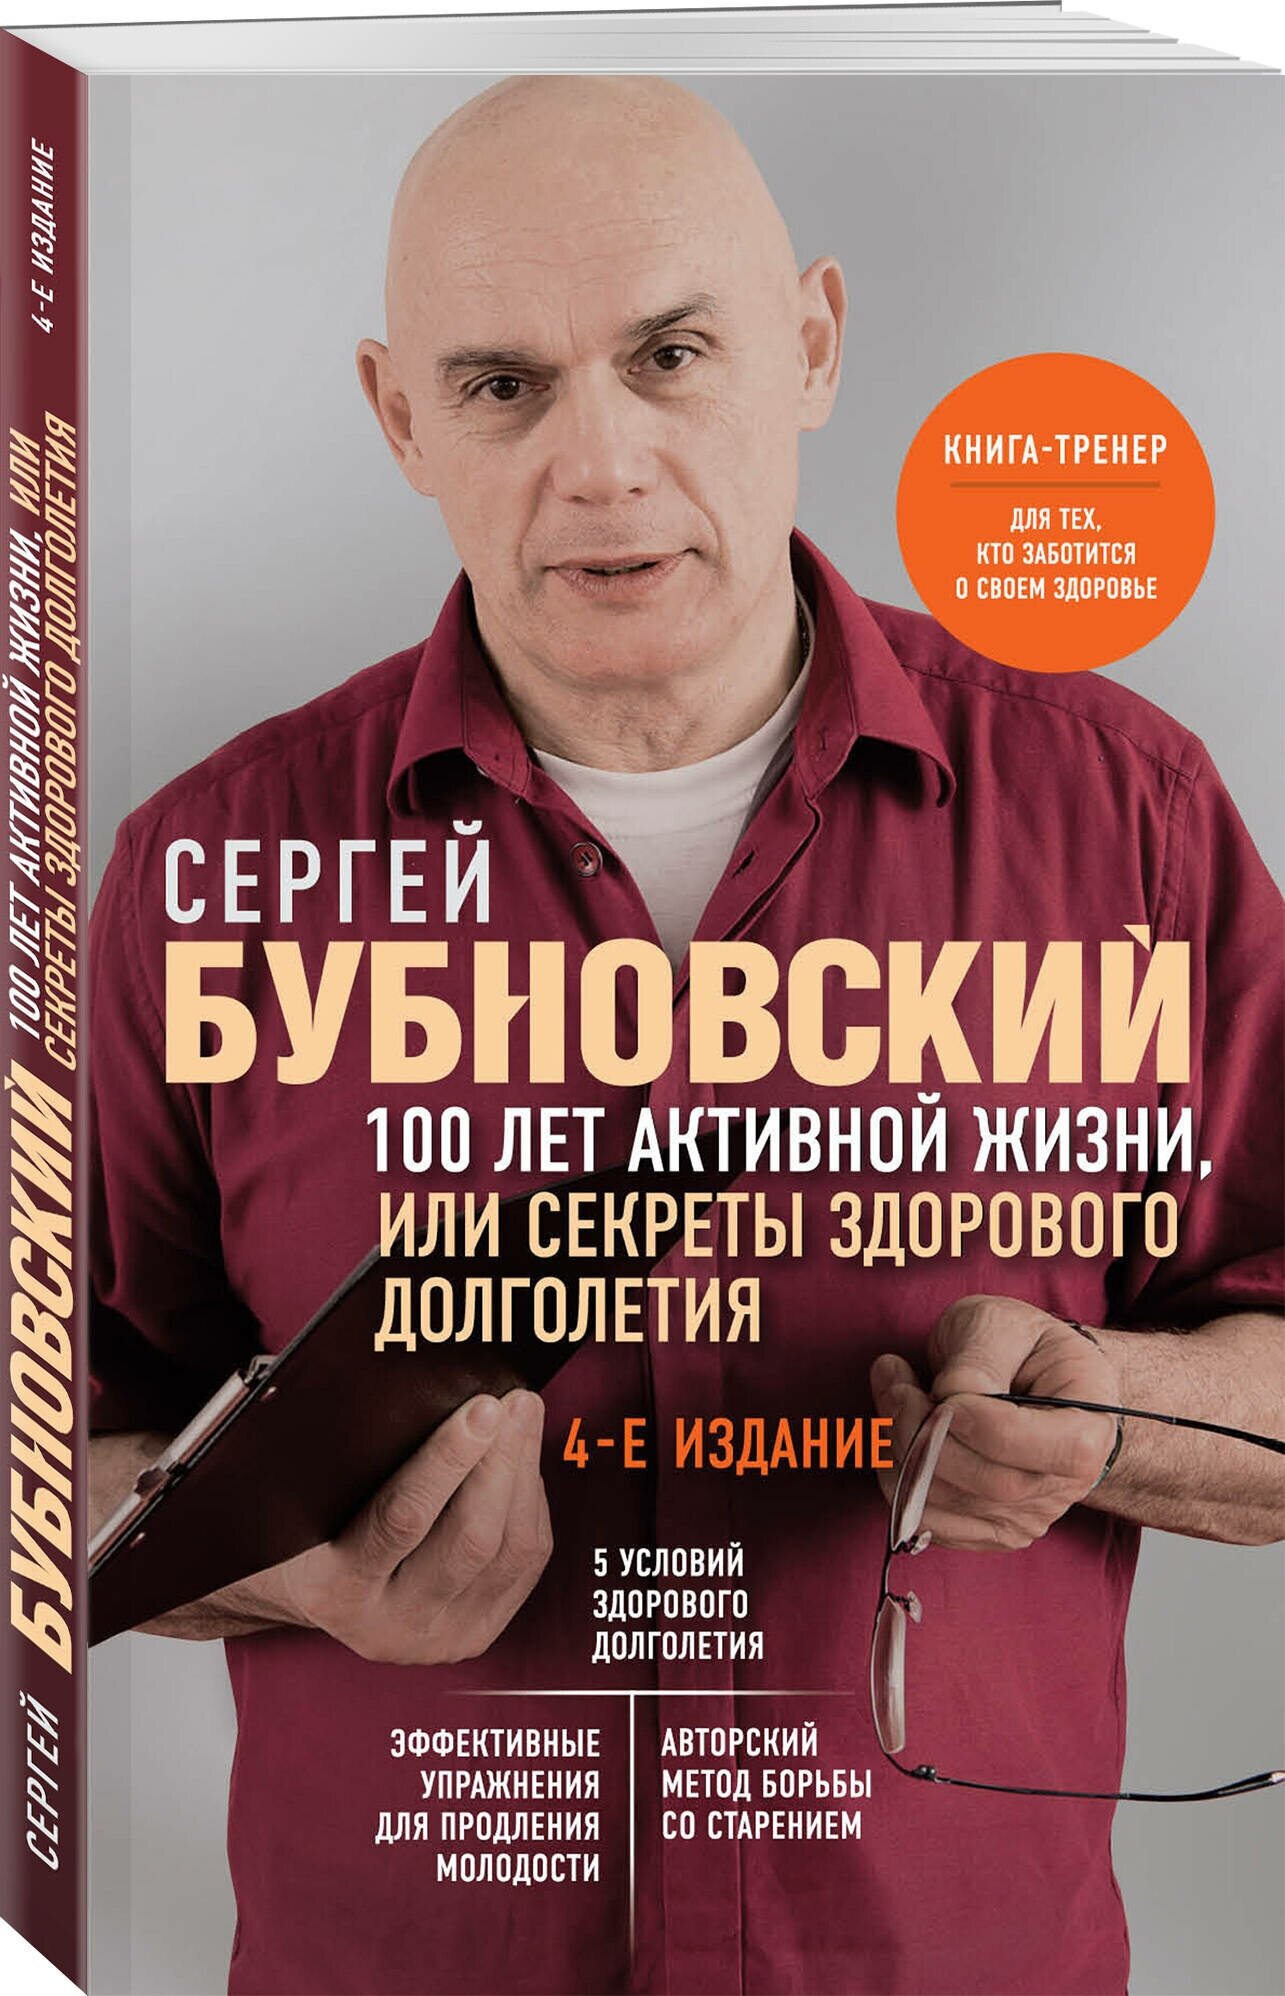 Бубновский С. М. 100 лет активной жизни, или Секреты здорового долголетия. 4-е издание